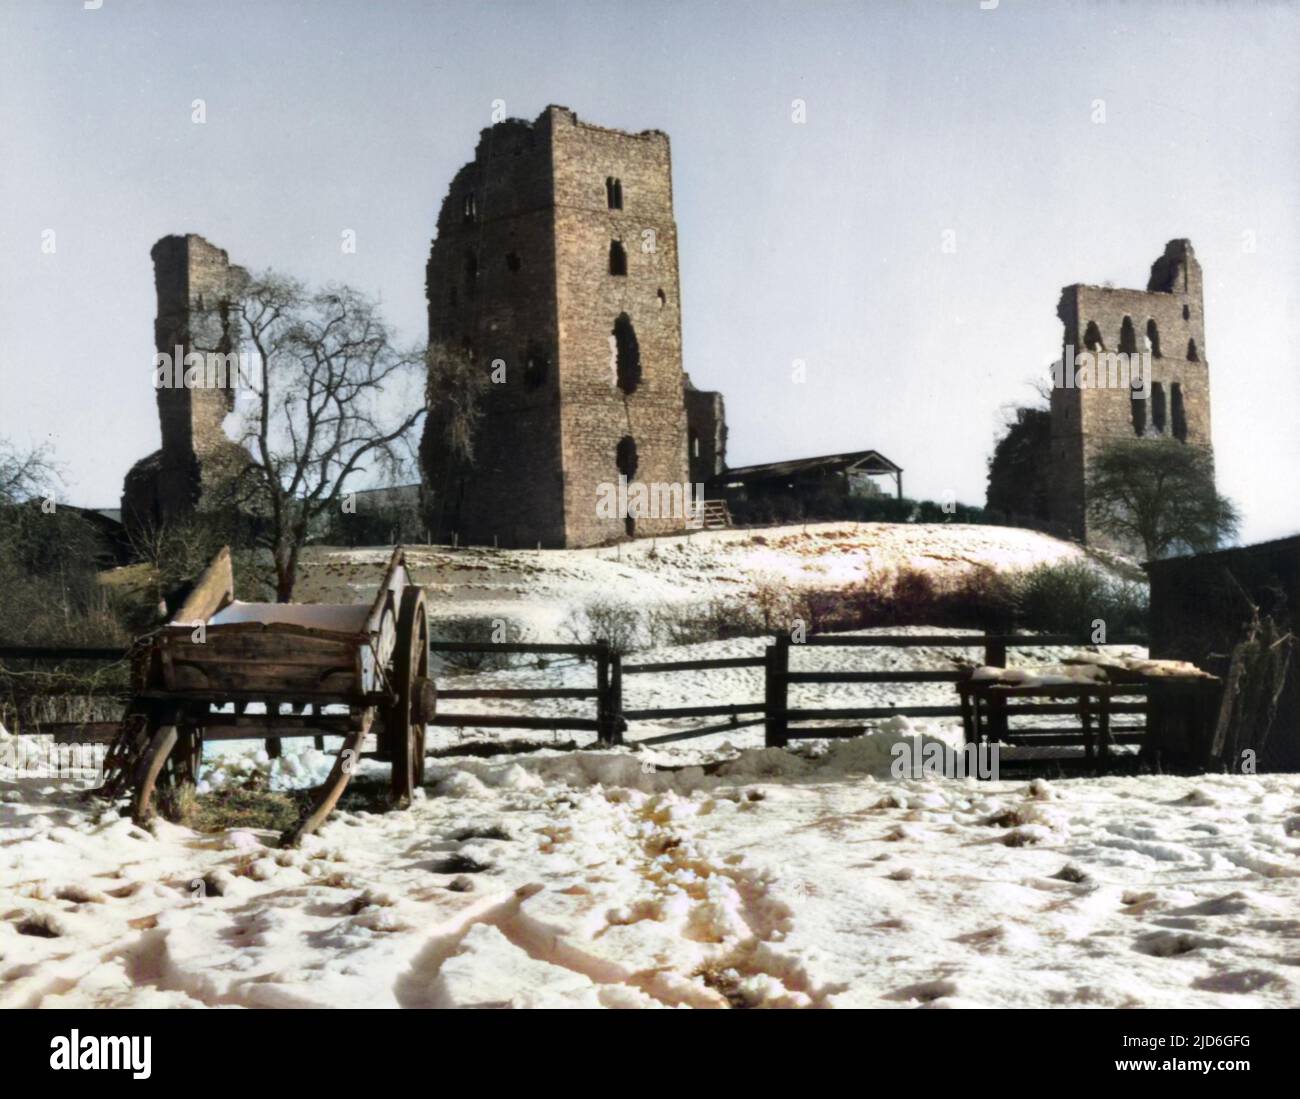 Le rovine innevate del castello Sheriff Hutton, Rydale, North Yorkshire, Inghilterra. Fu costruito nel 1379 da Bertram de Bulmer, Sheriff di York, come residenza fortificata. Versione colorata di : 10181443 Data: 14th secolo Foto Stock